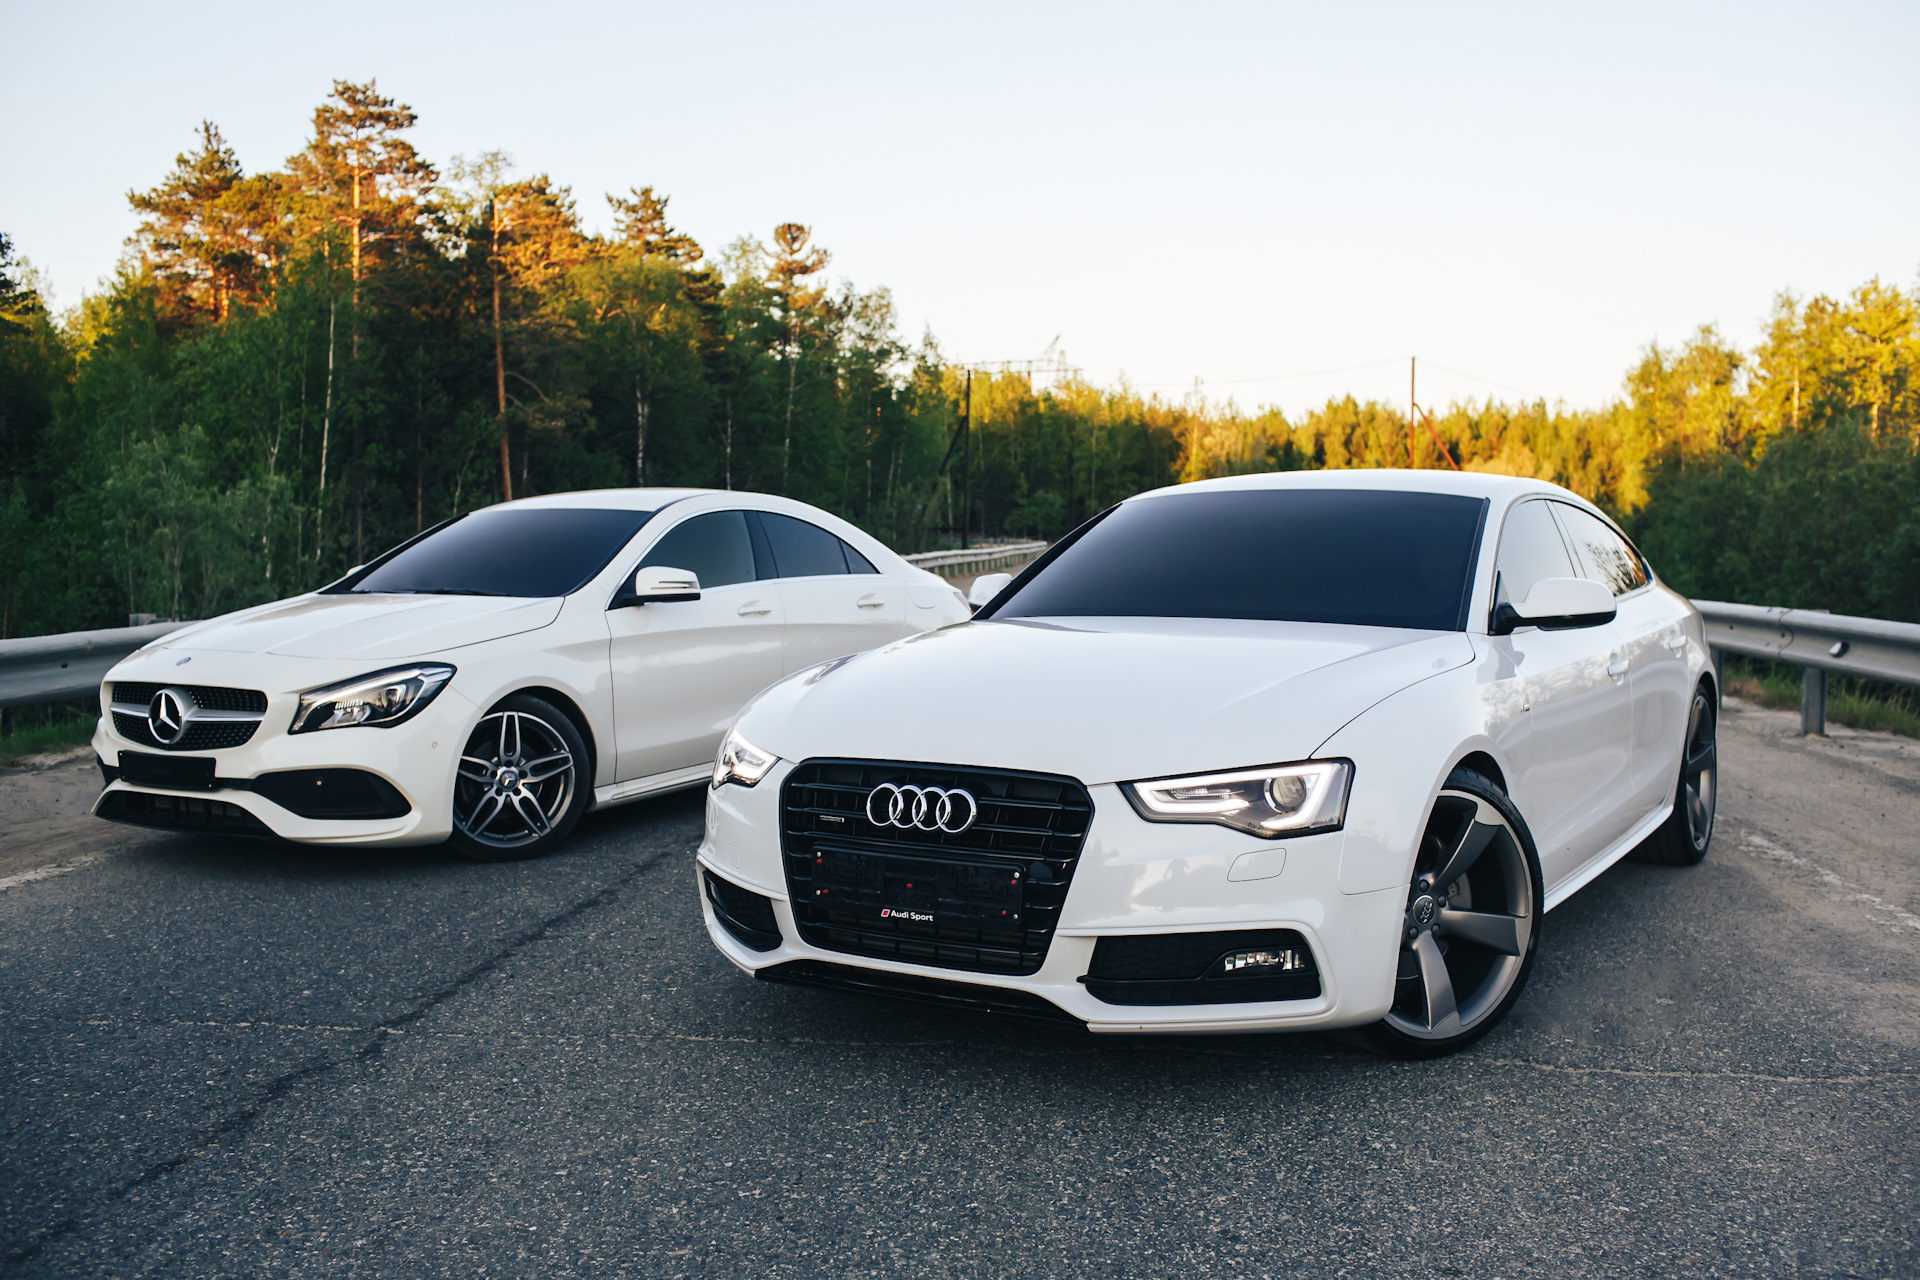 CLA vs Audi